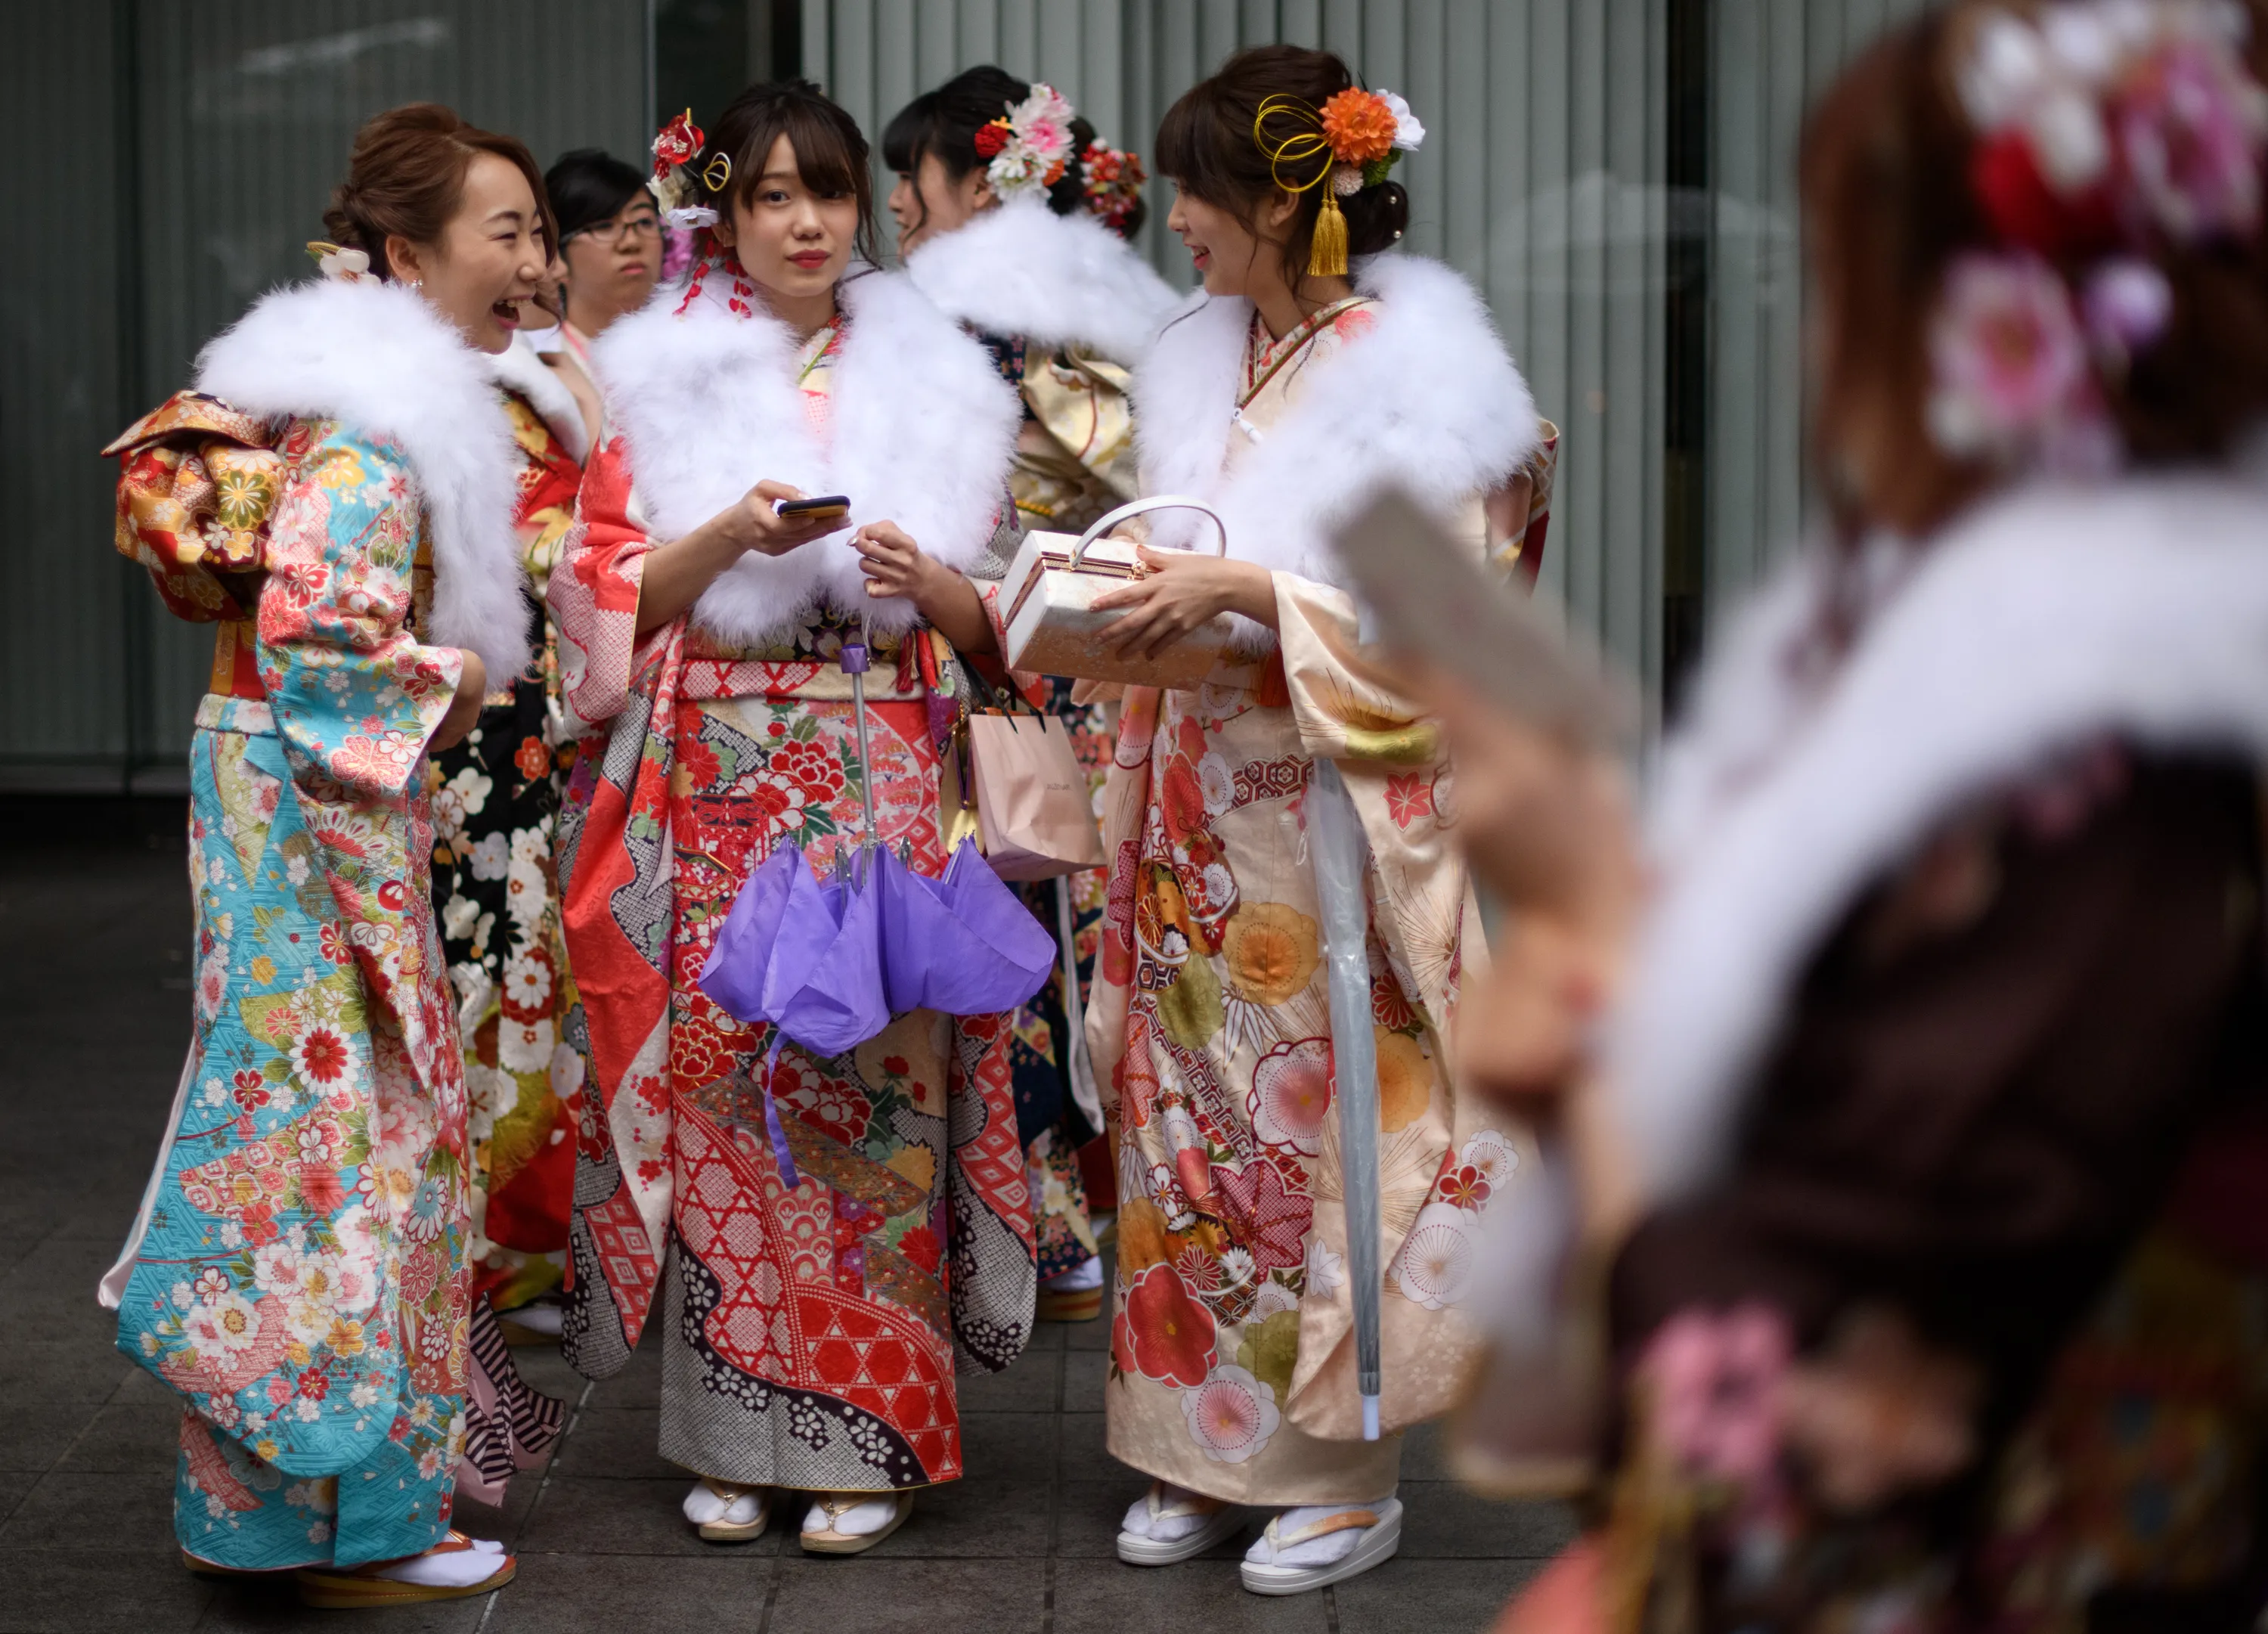 В день совершеннолетия можно. День совершеннолетия в Японии кимоно. Фестиваль в Японии в кимоно. Праздник в Японии день совершеннолетия. Праздничное кимоно в Японии.